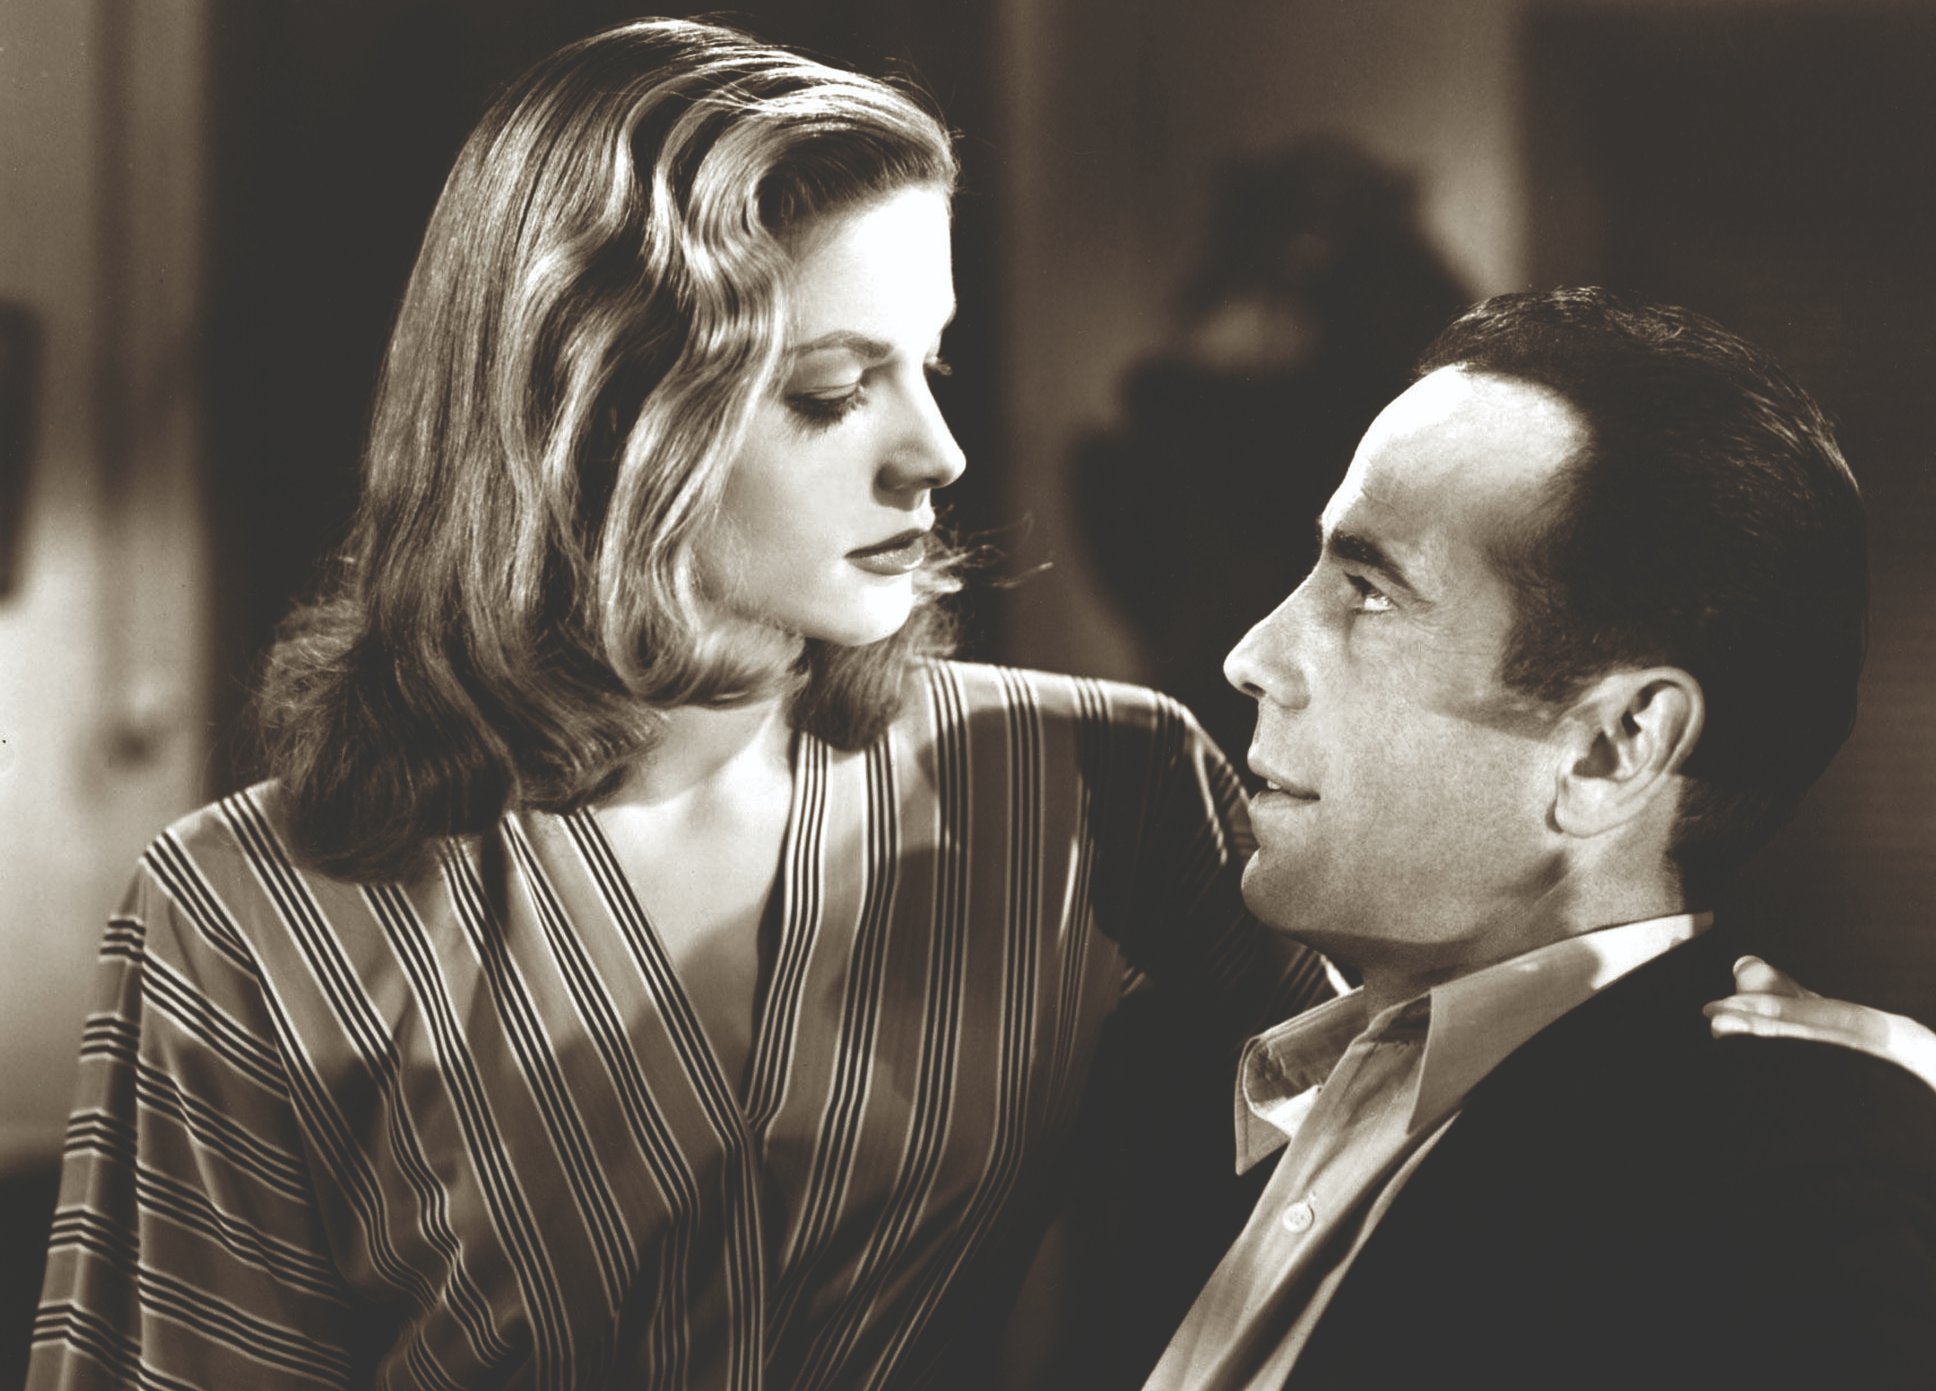 Lauren Bacall, encarnación de la femme fatale del cine, arquetipo diseñado para advertir la tragedia que acarreaba a los hombres enamorarse de una mujer segura de sí misma.